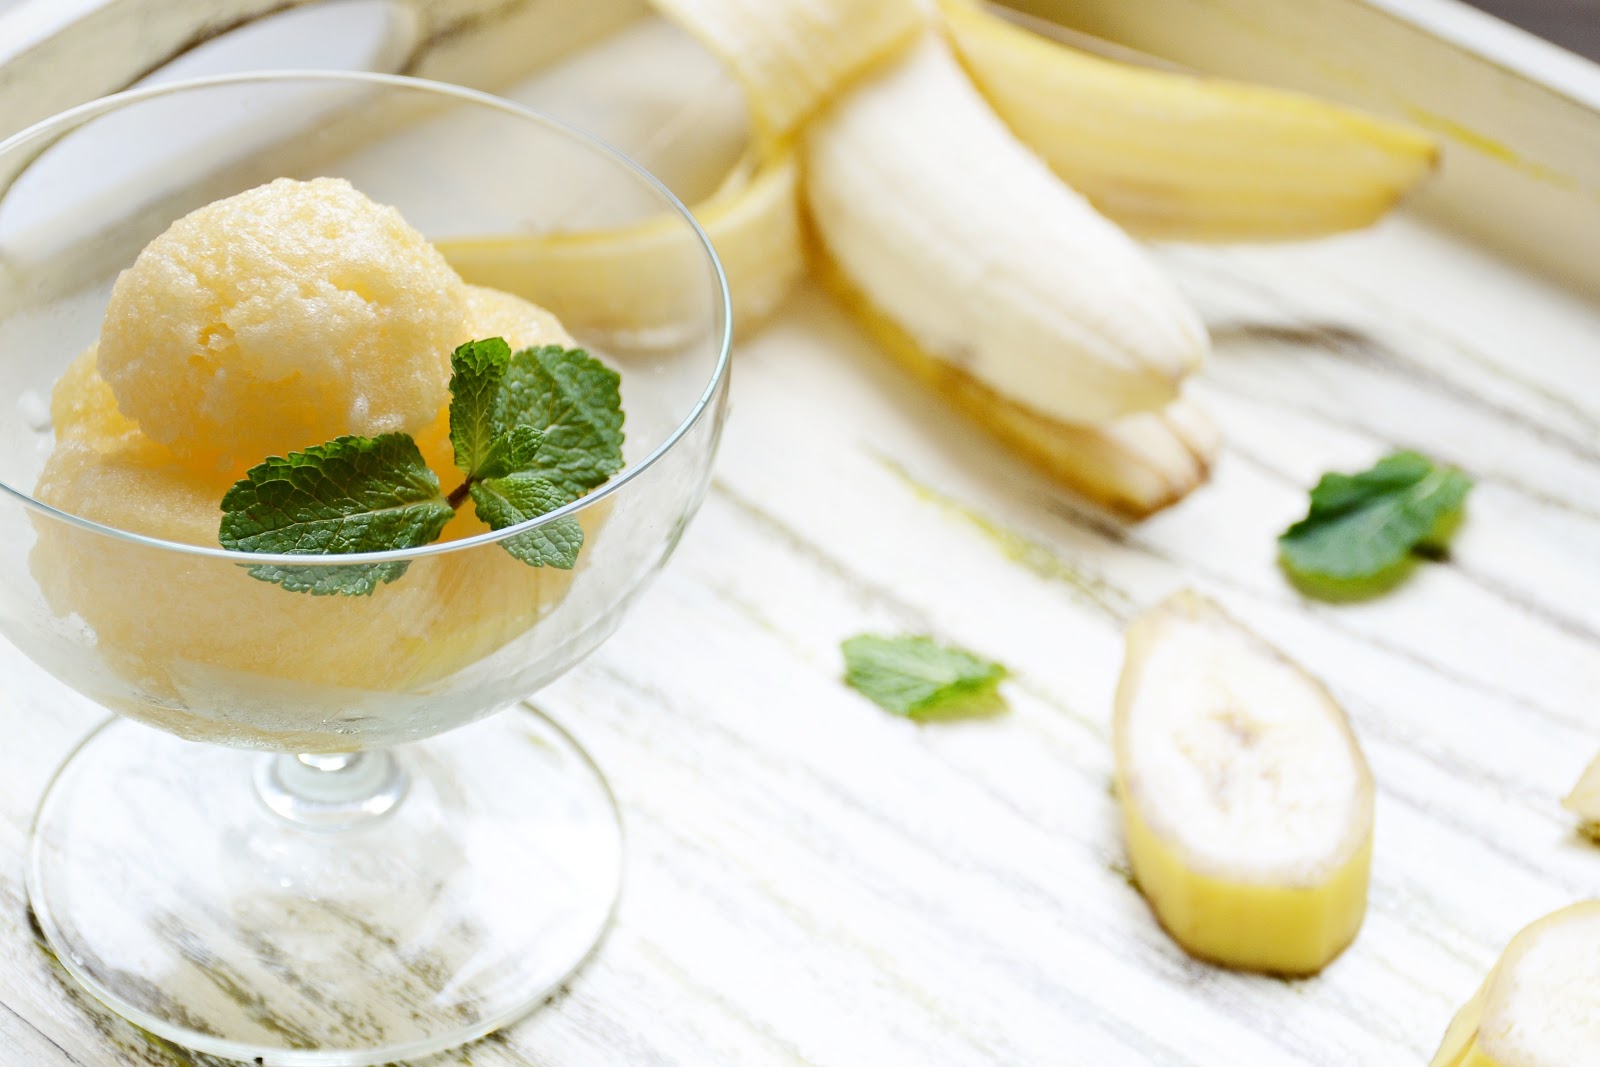 Dietary banana ice cream